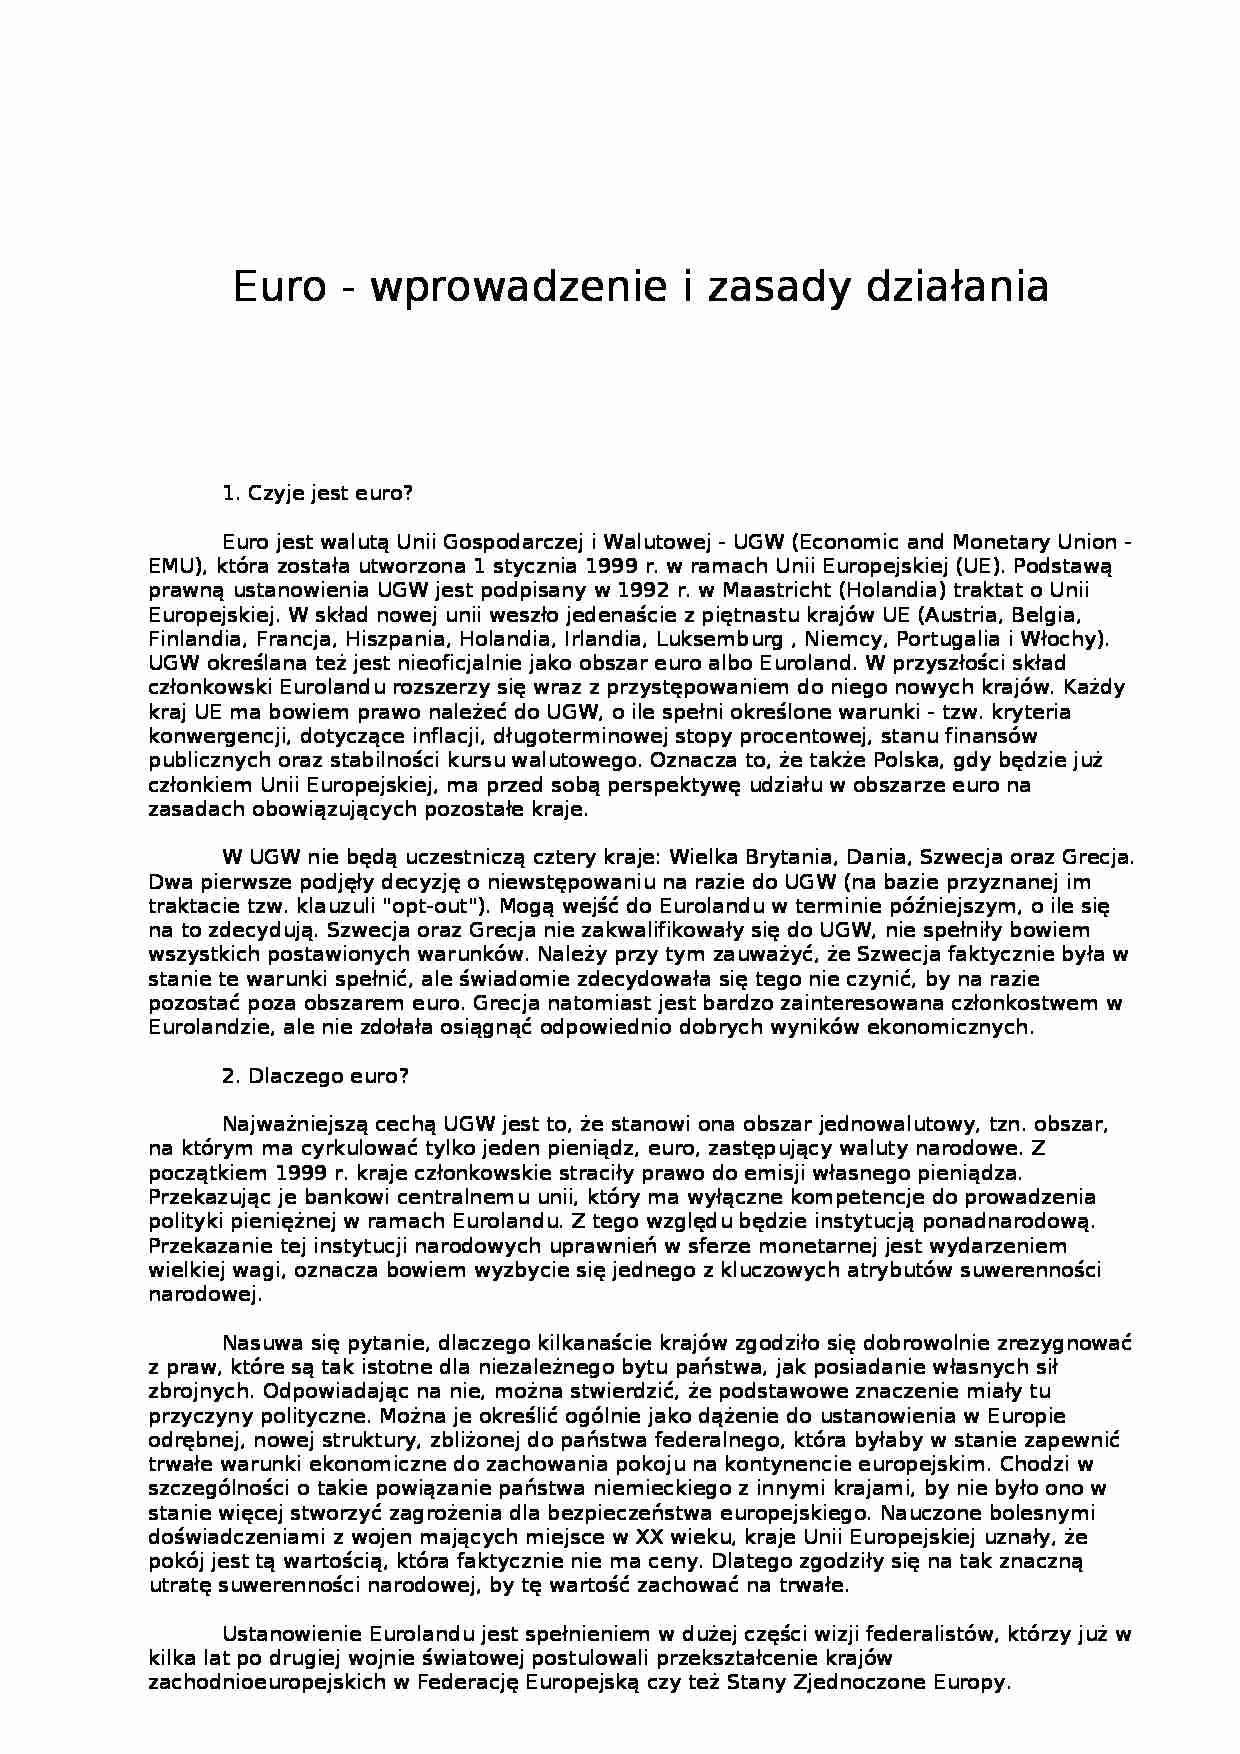 Euro - wprowadzenie i zasady działania - Europejski Bank Centralny - strona 1